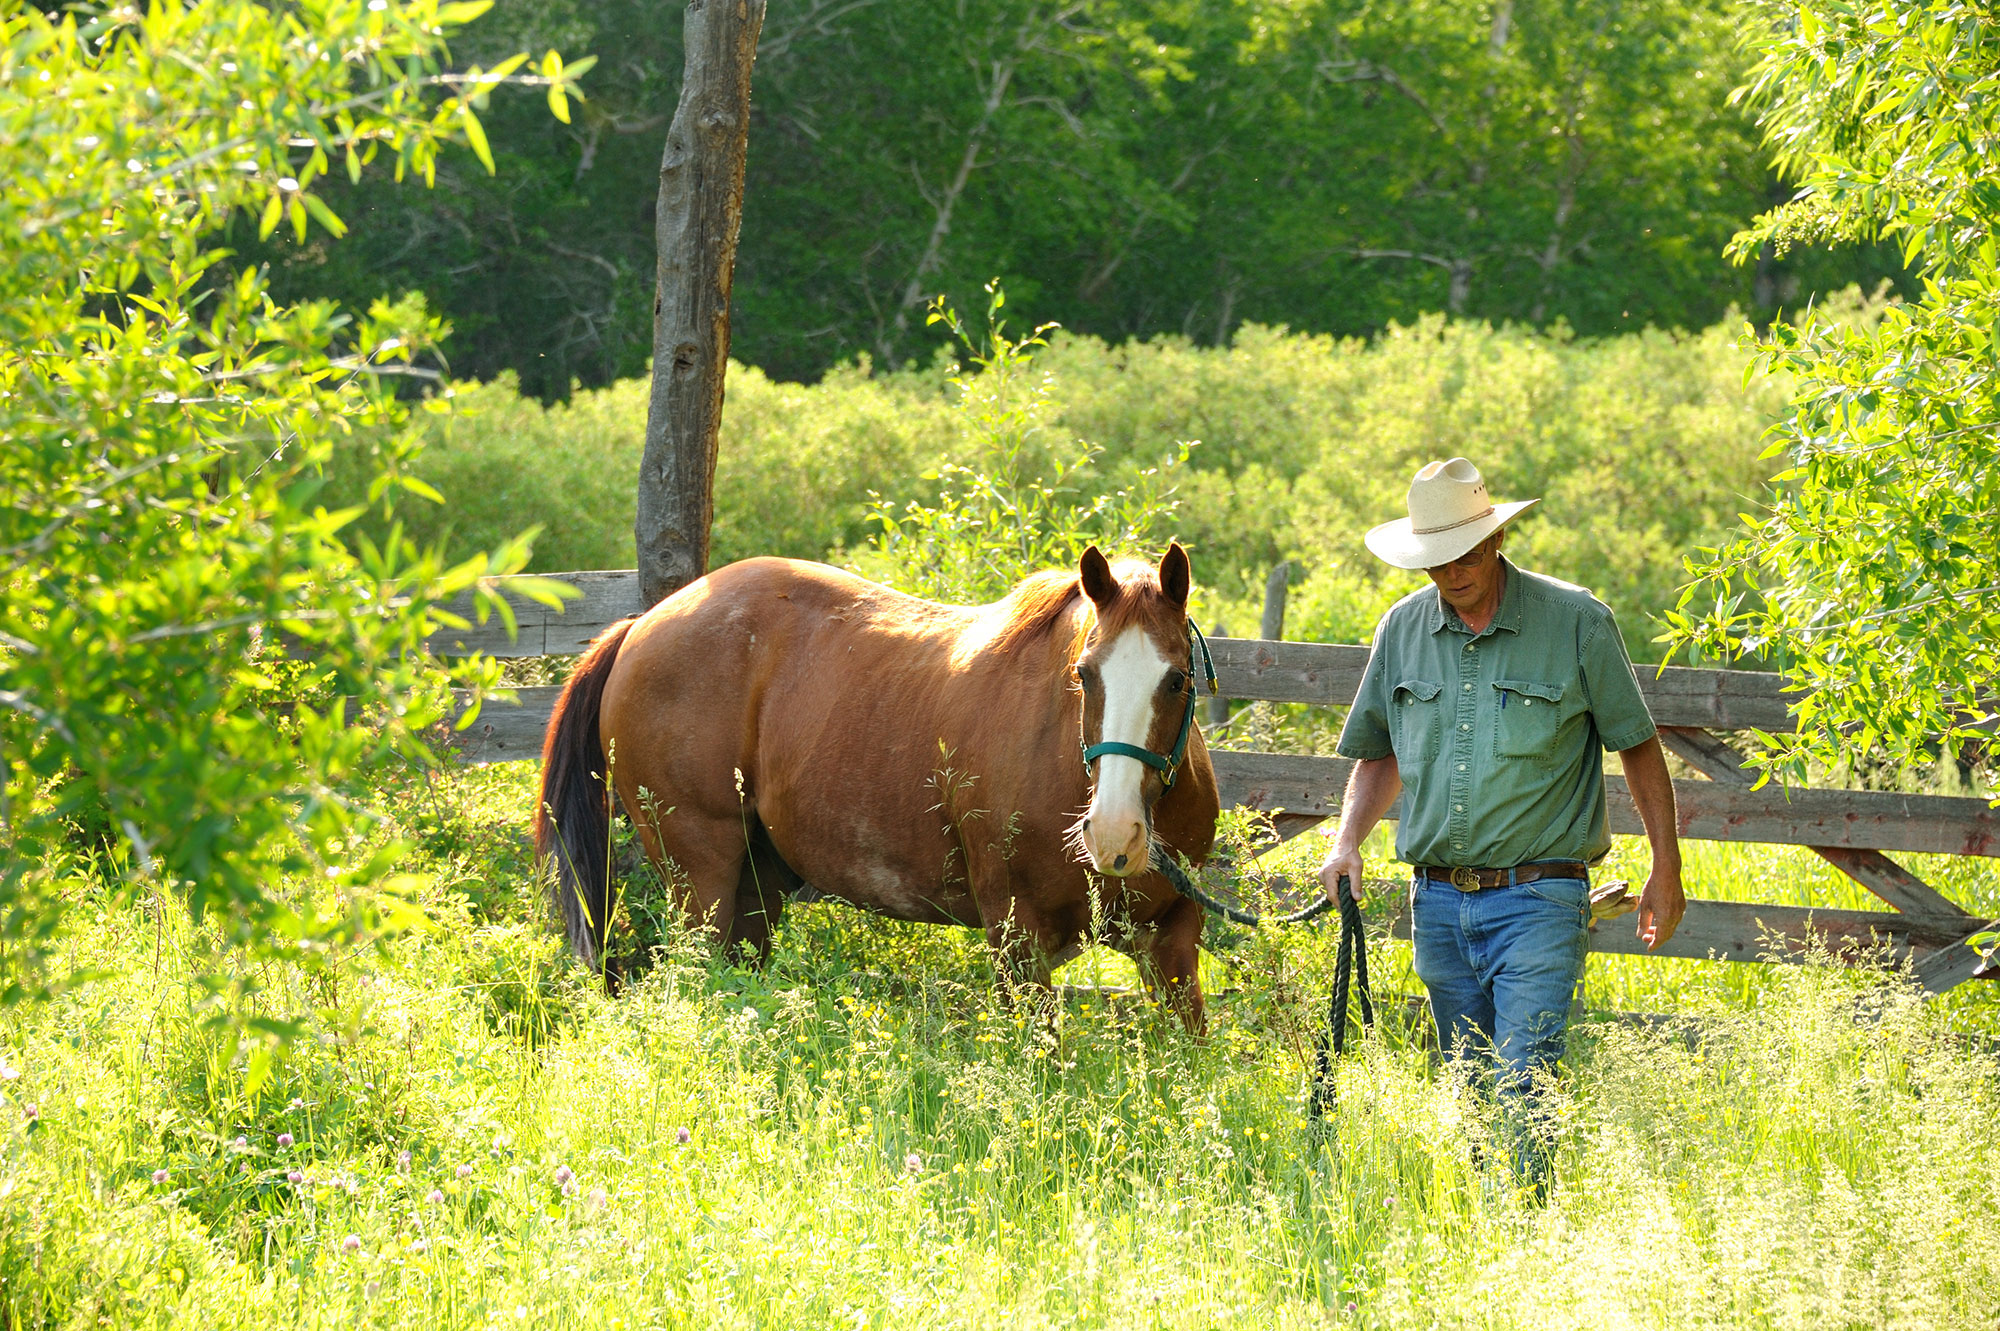 A man walking a horse in a field.